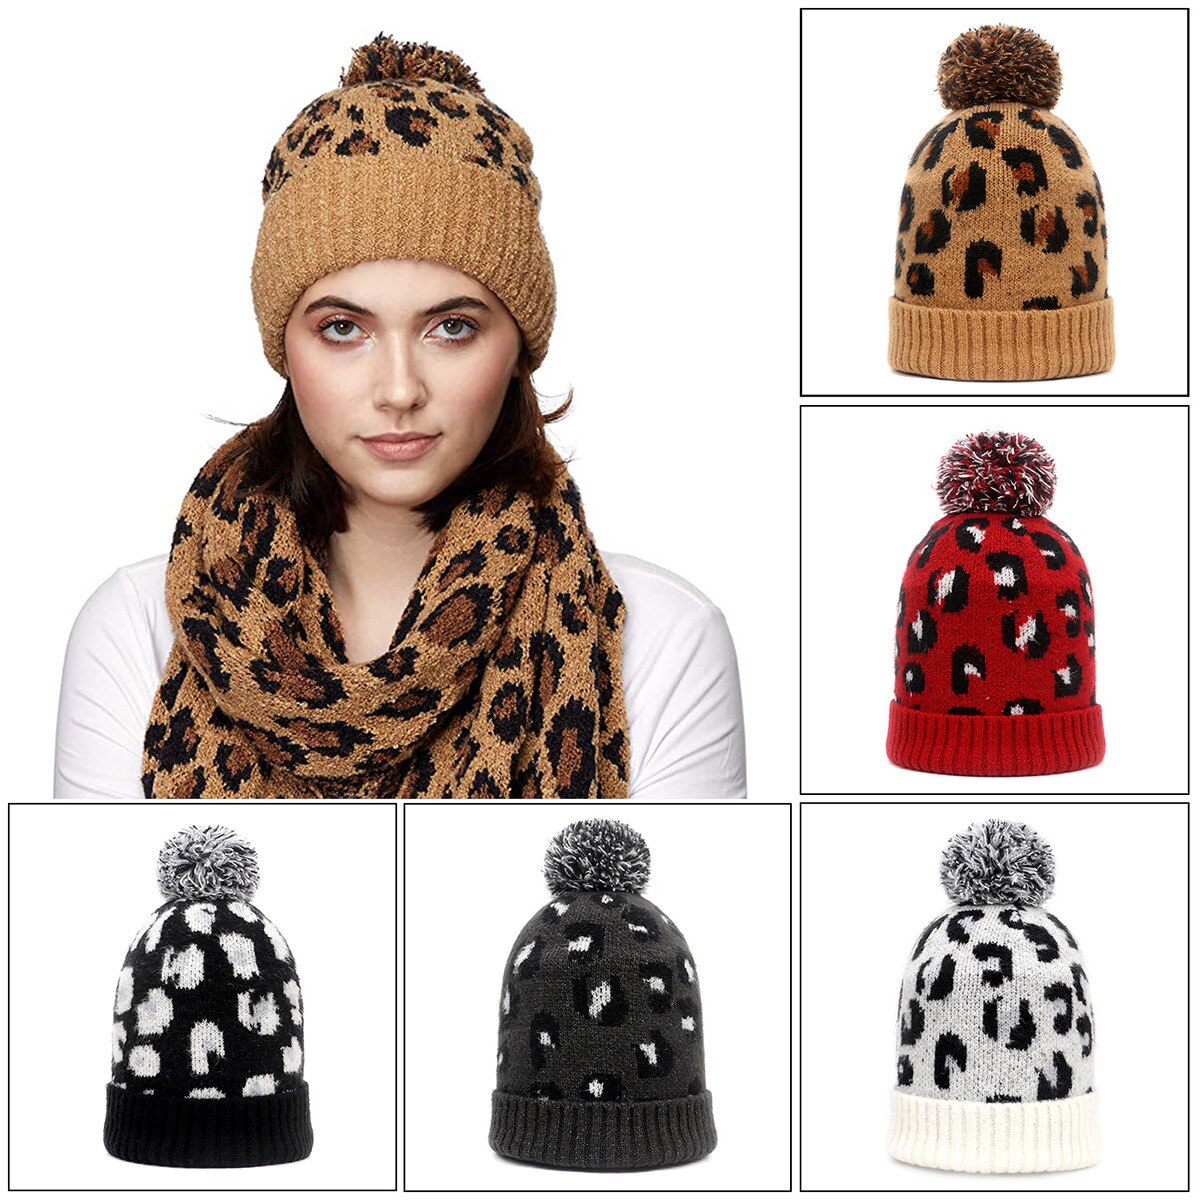 Vrouwen \ U2019s Winter Beanie Hoed Soft Warm Knit Skull Cap Met Luipaard Print Bont Pom Voor Outdoor Activiteiten